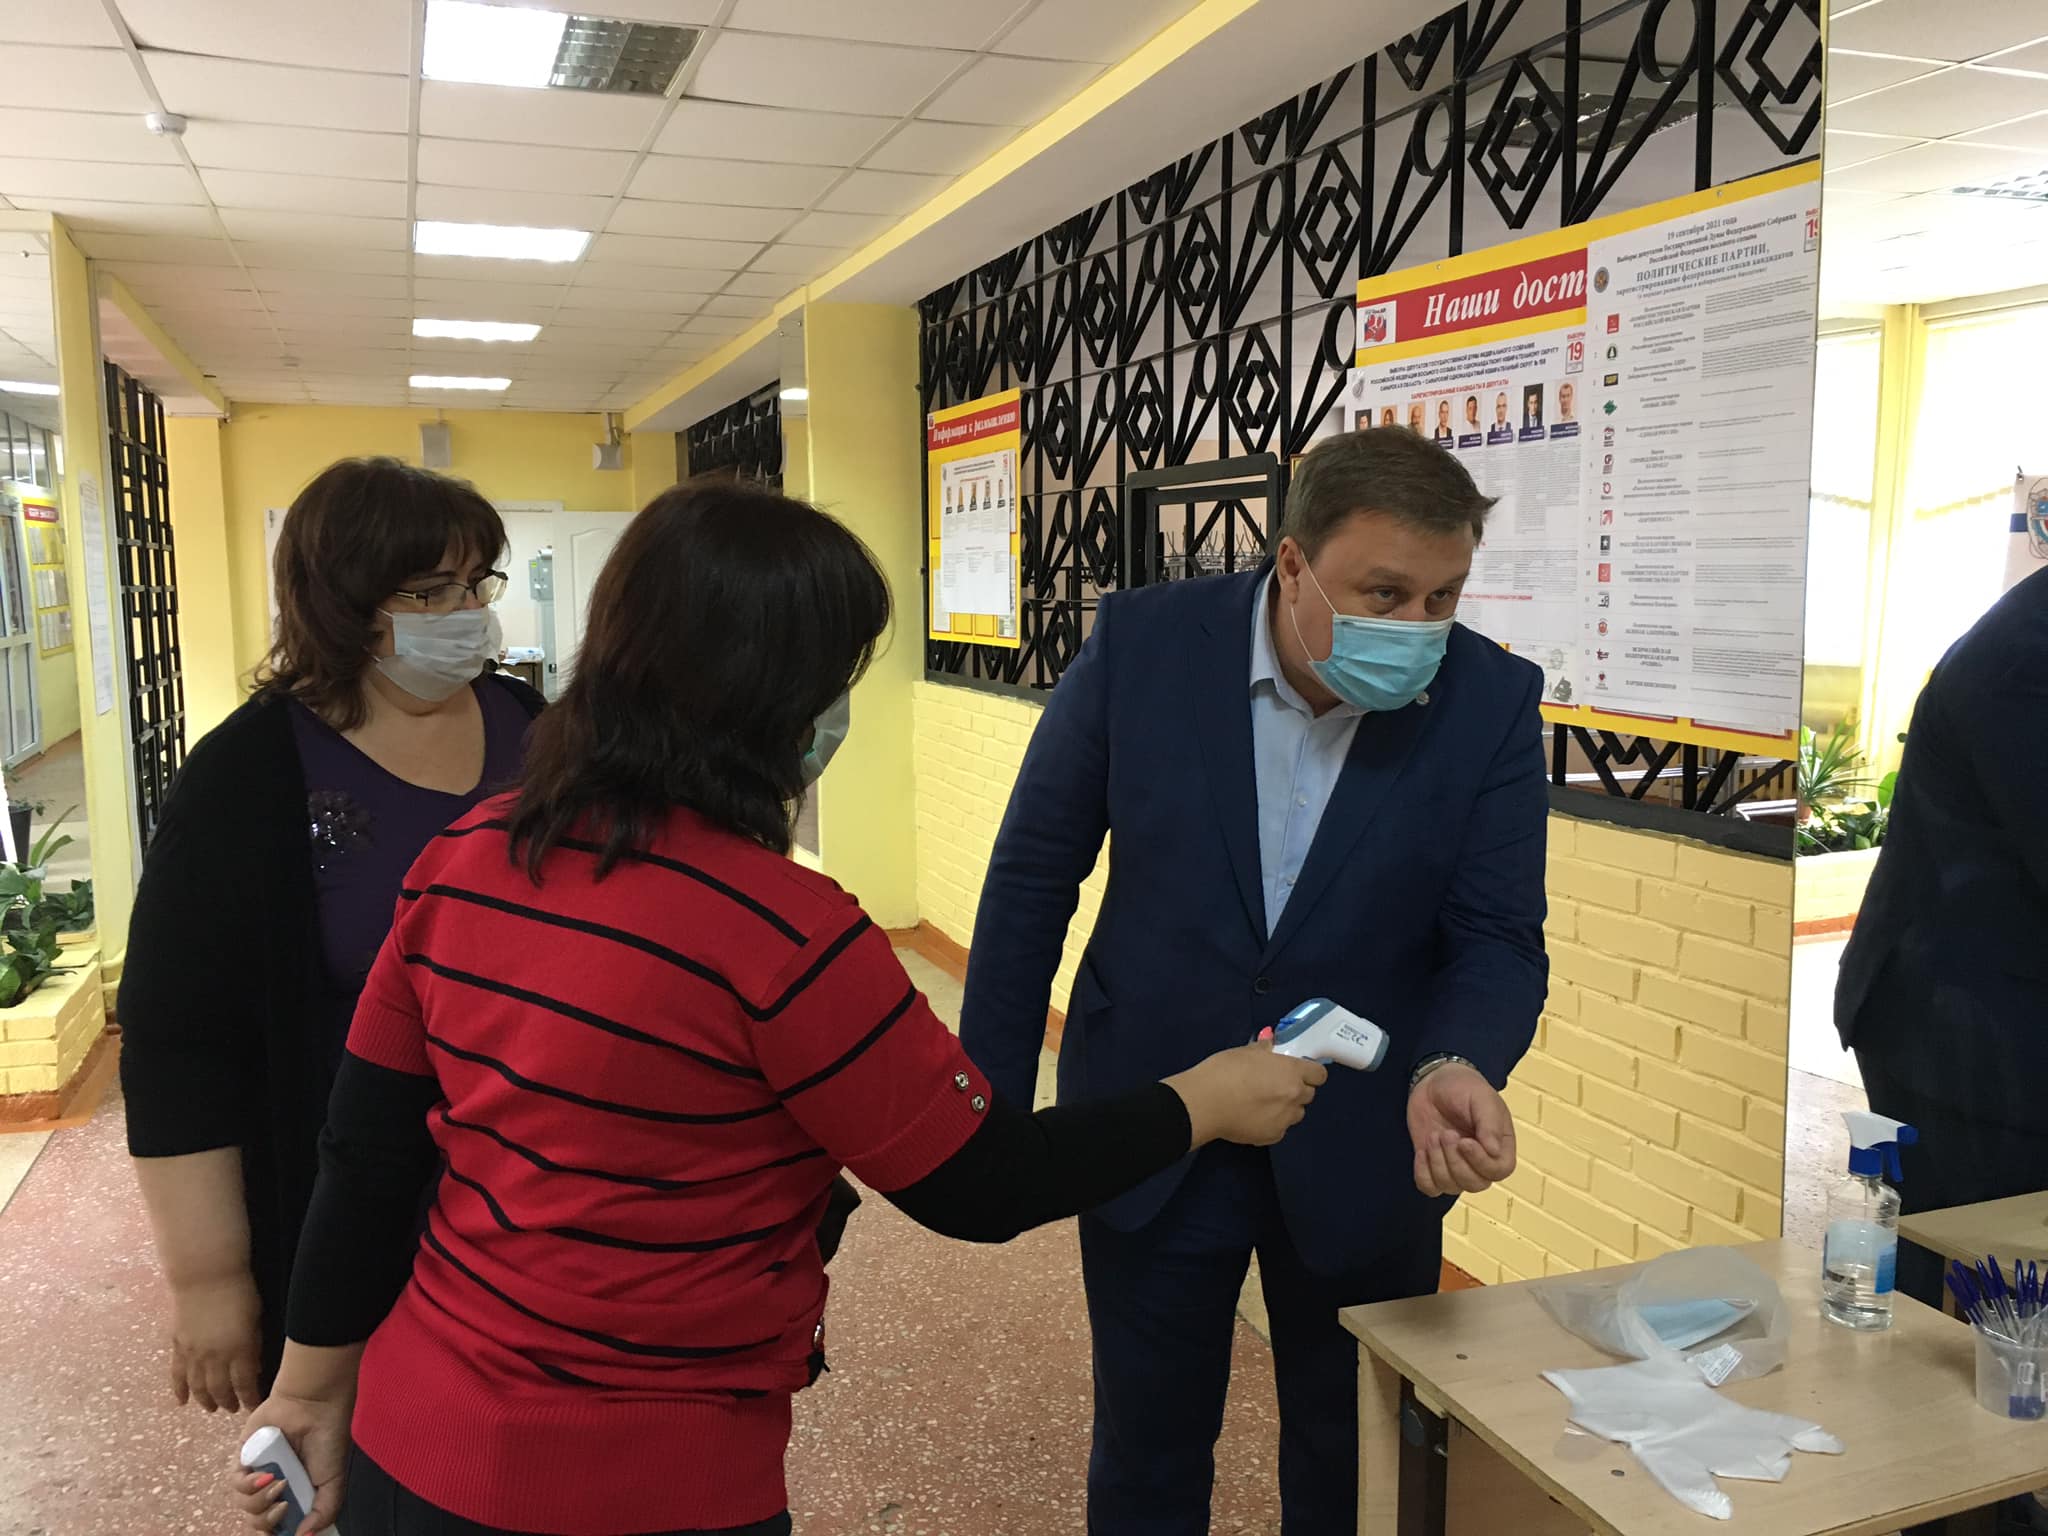 Член штаба общественного наблюдения за выборами Павел Покровский: Мы поняли четко, что трехдневный режим голосования - это очень удобно